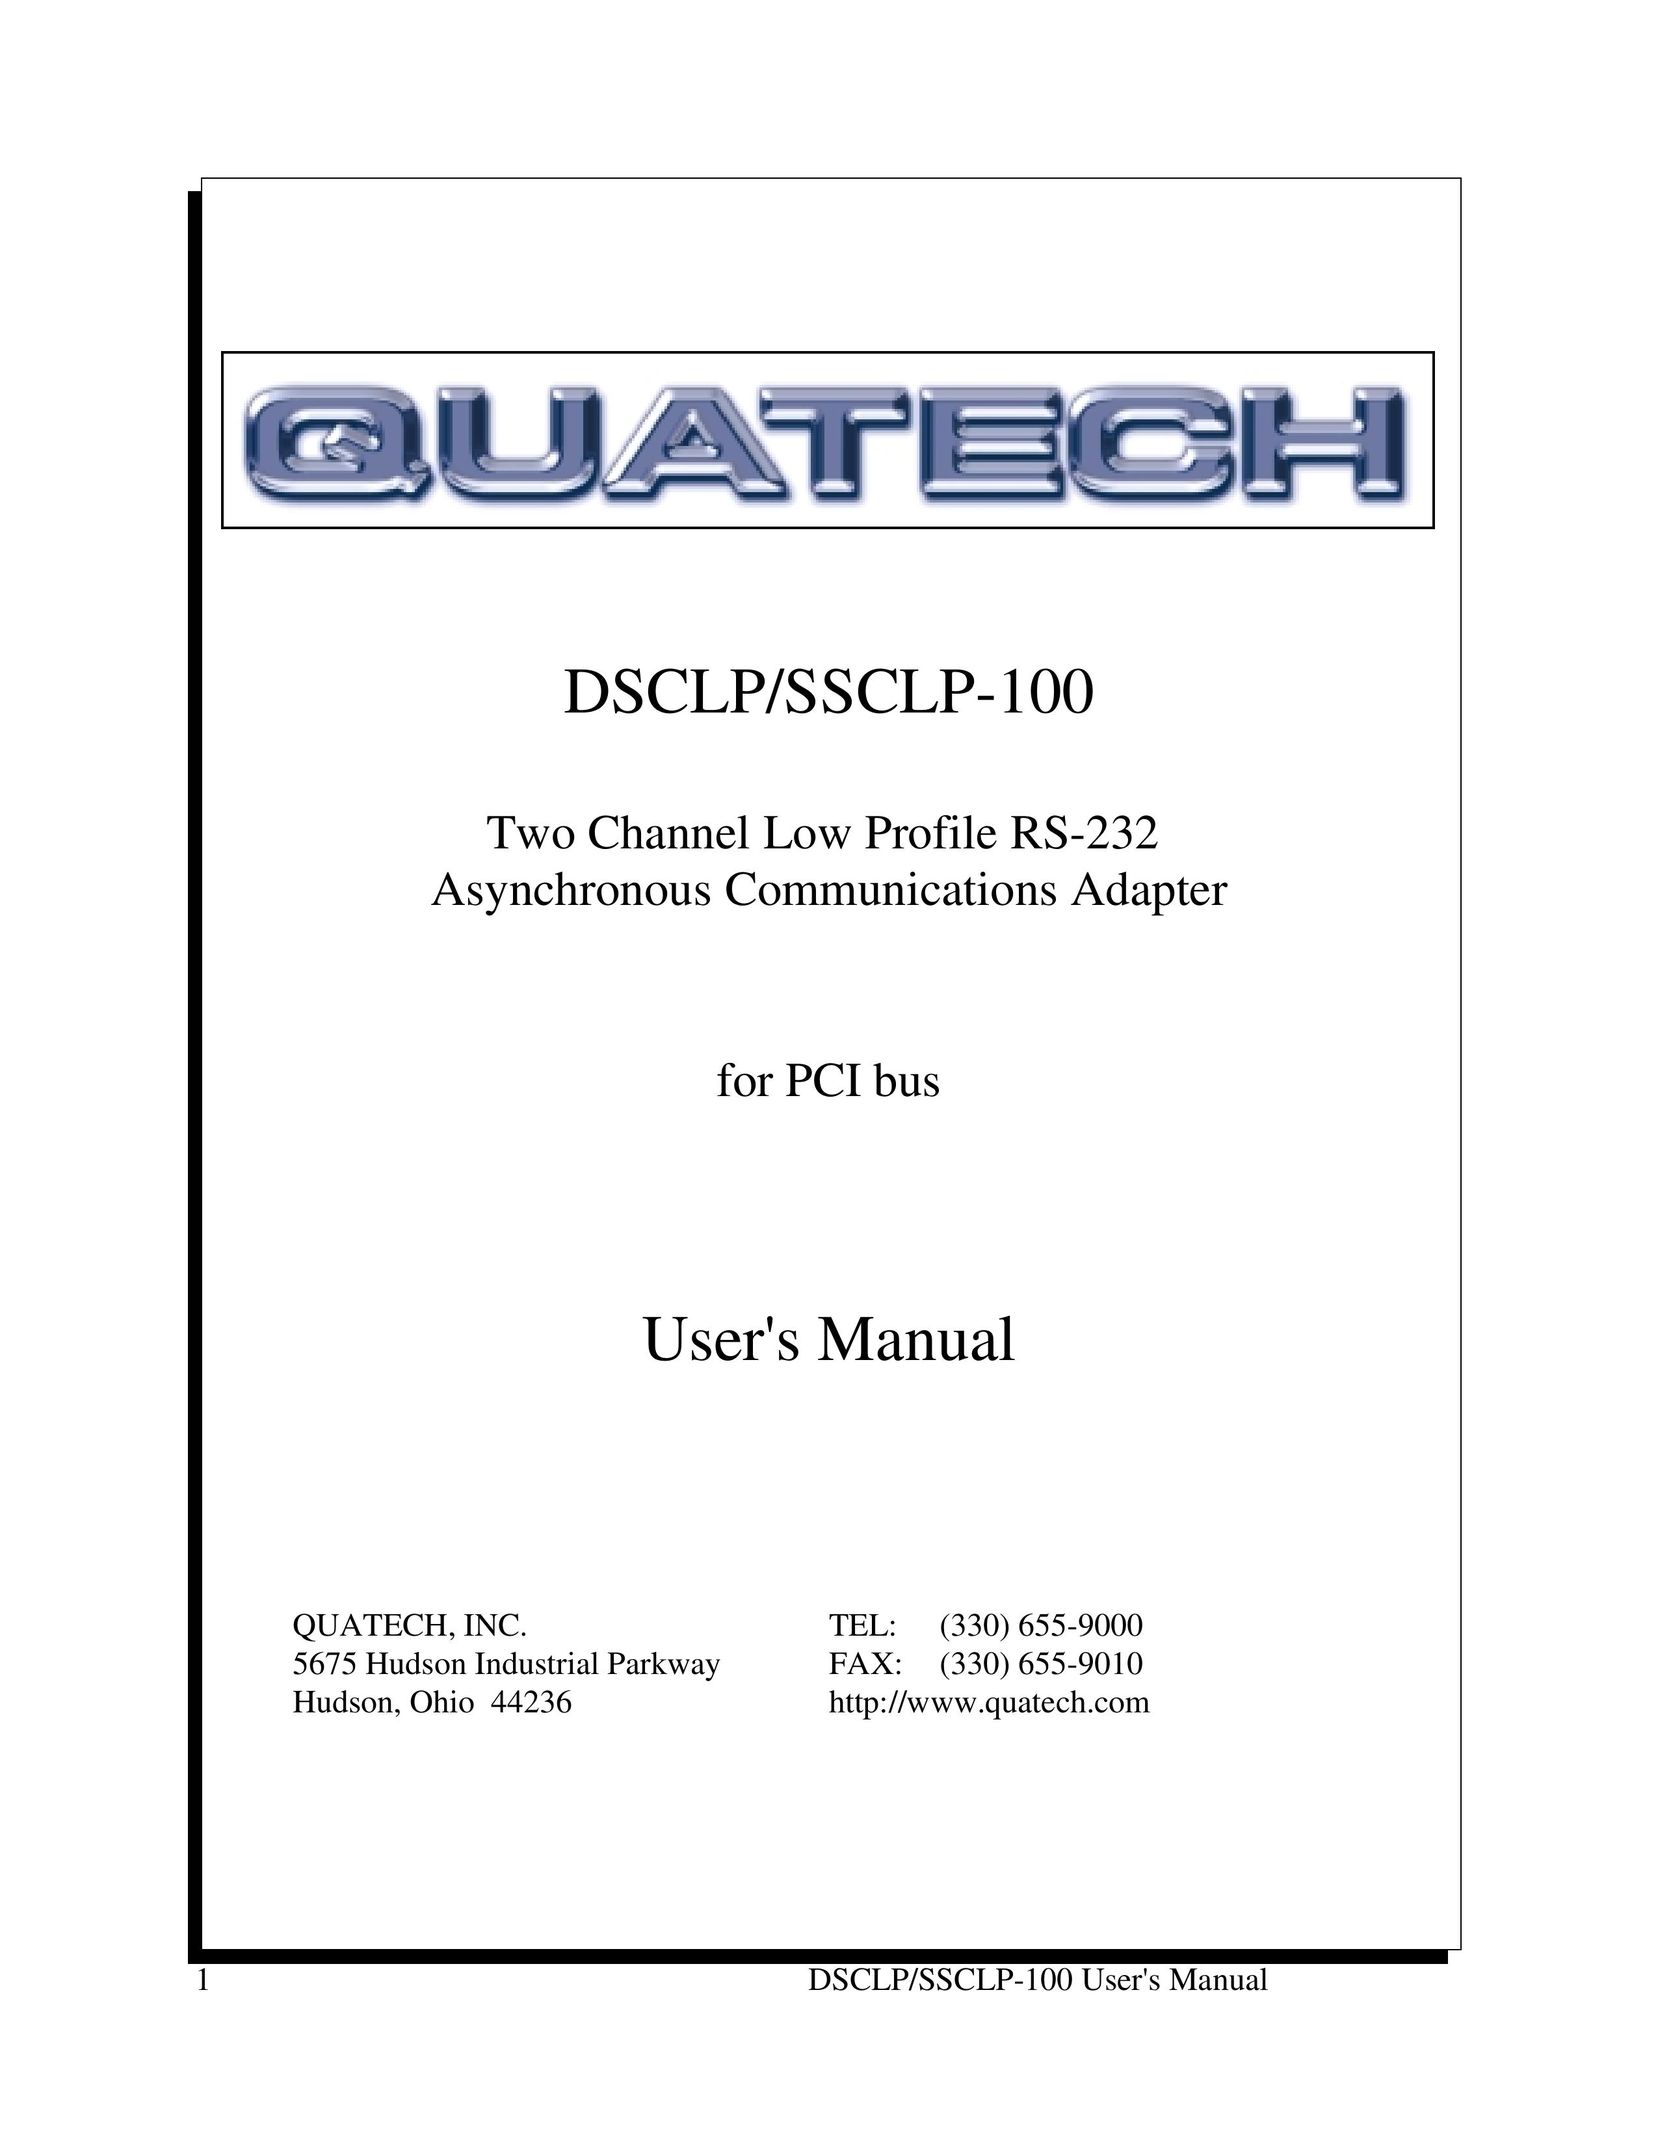 Quatech DSCLP/SSCLP-100 Network Card User Manual